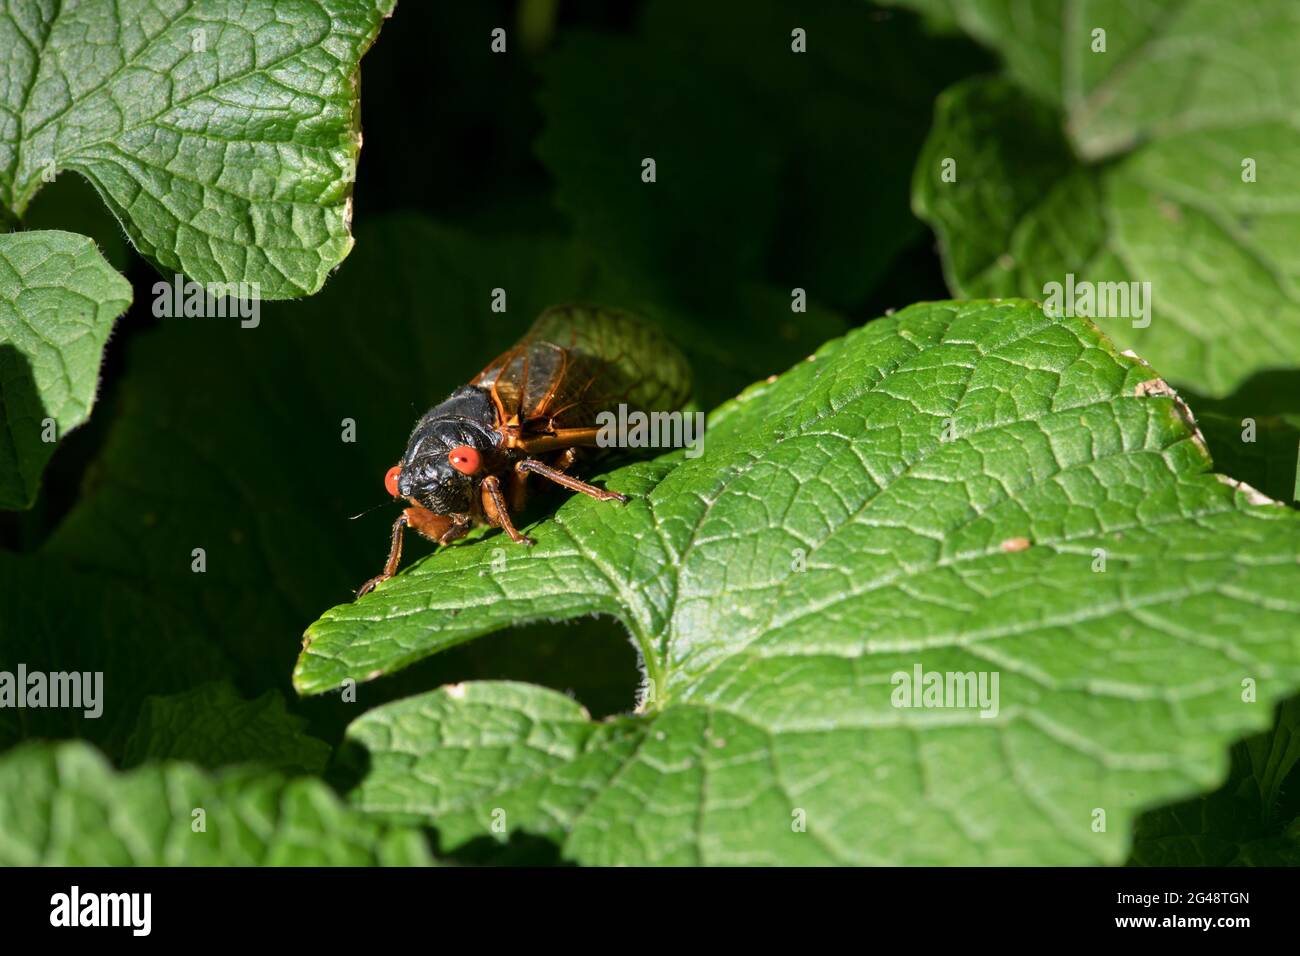 Mignon périodique 17 ans cicada perchée sur une feuille. Banque D'Images